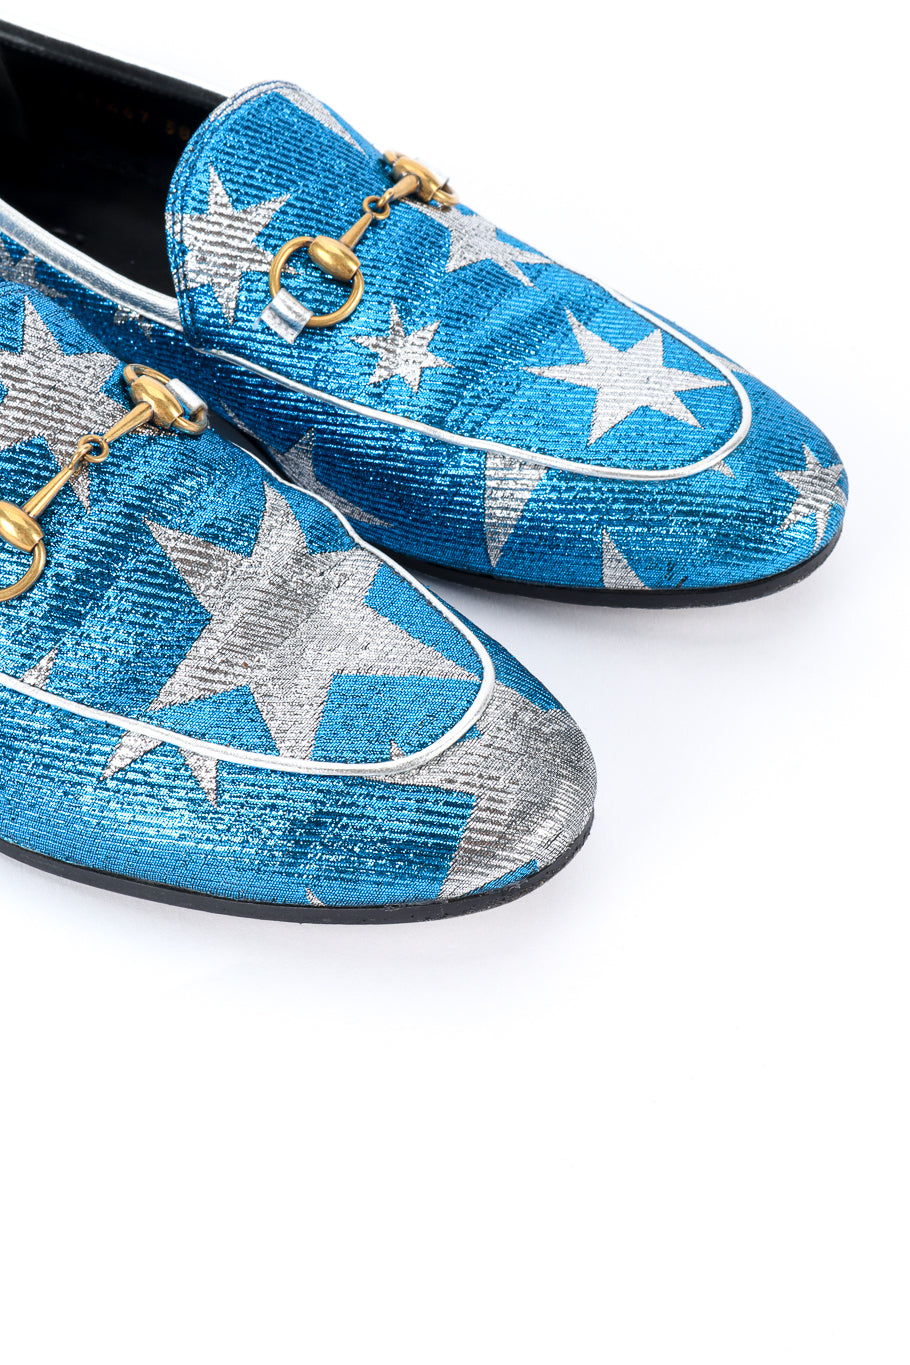 Gucci Starry Sky Lurex Loafers toe closeup @recess la